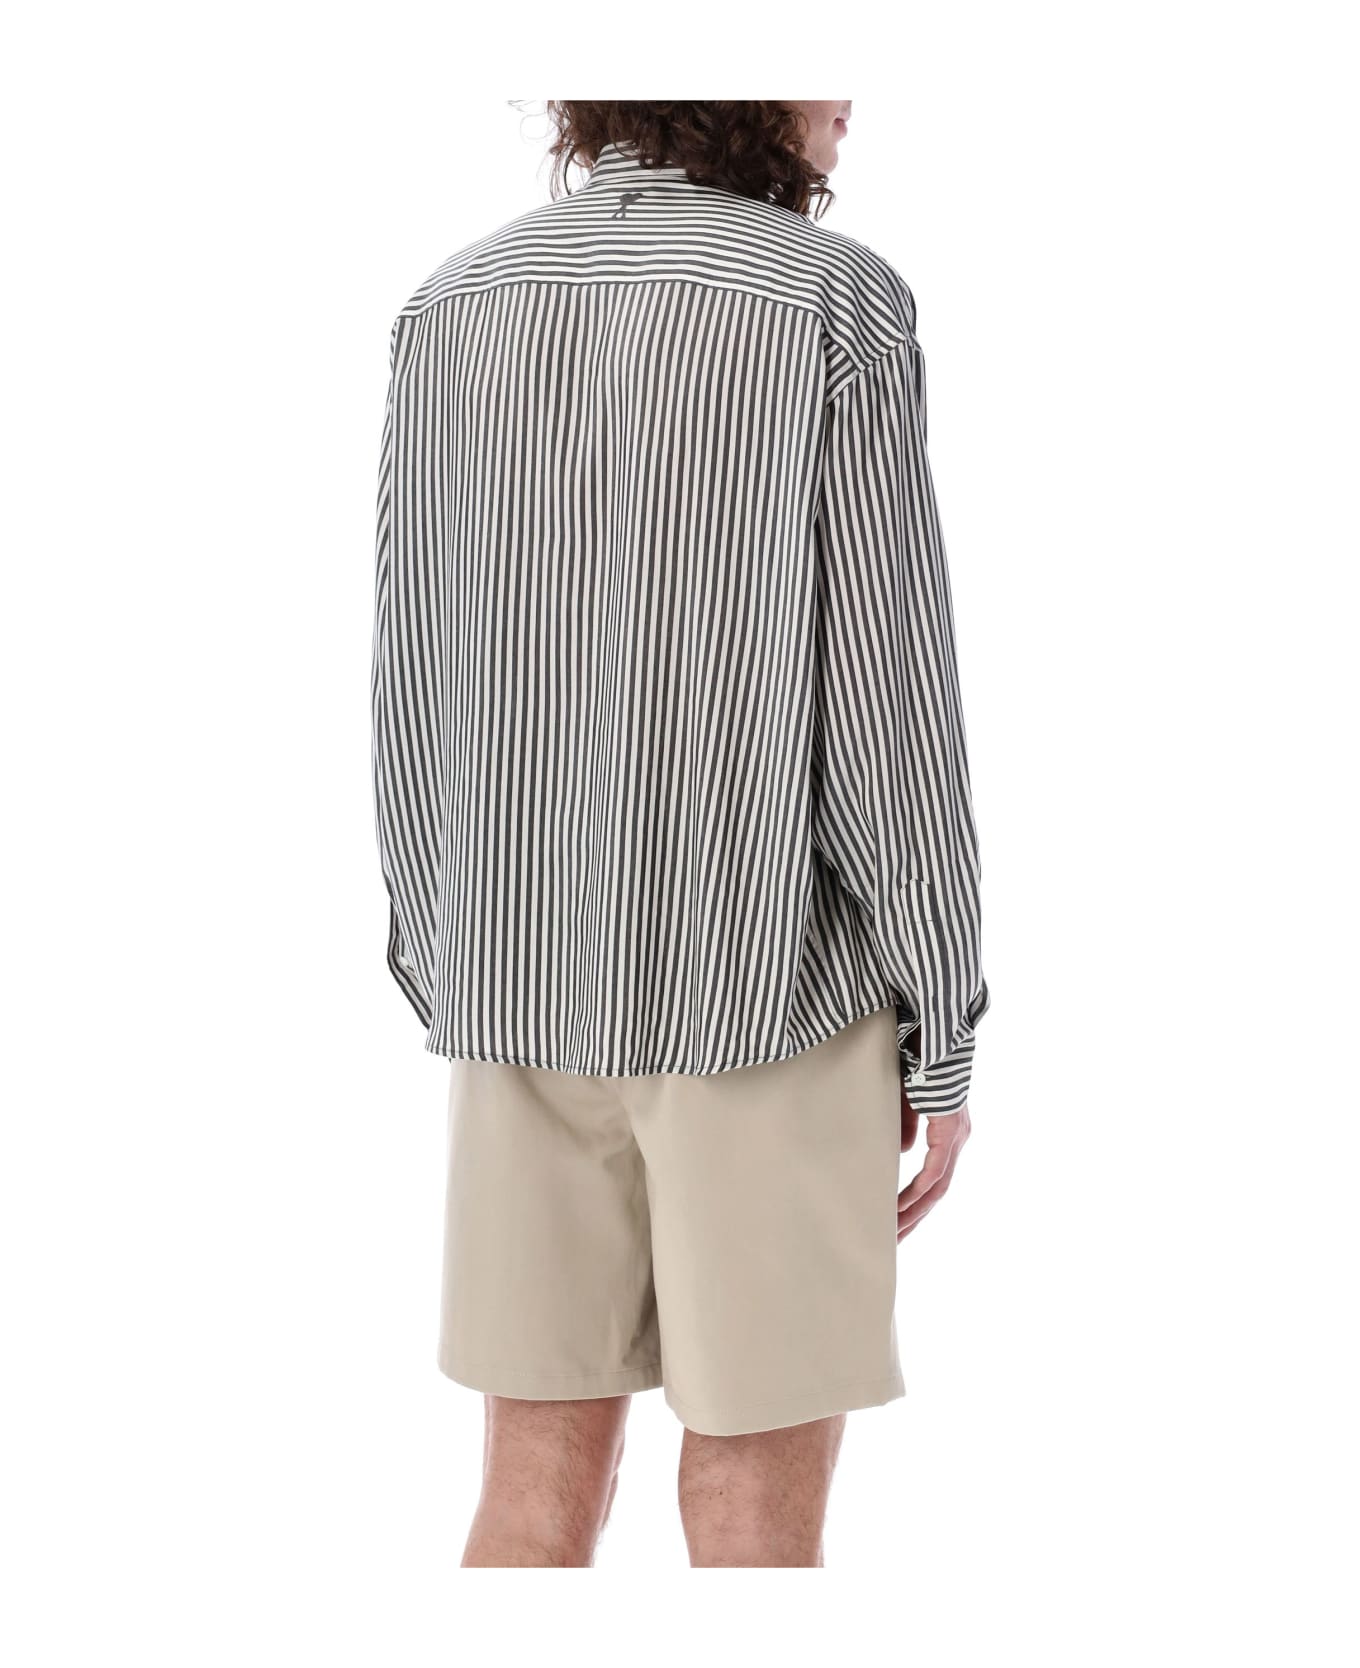 Ami Alexandre Mattiussi Striped Shirt - CHALK/BLACK シャツ